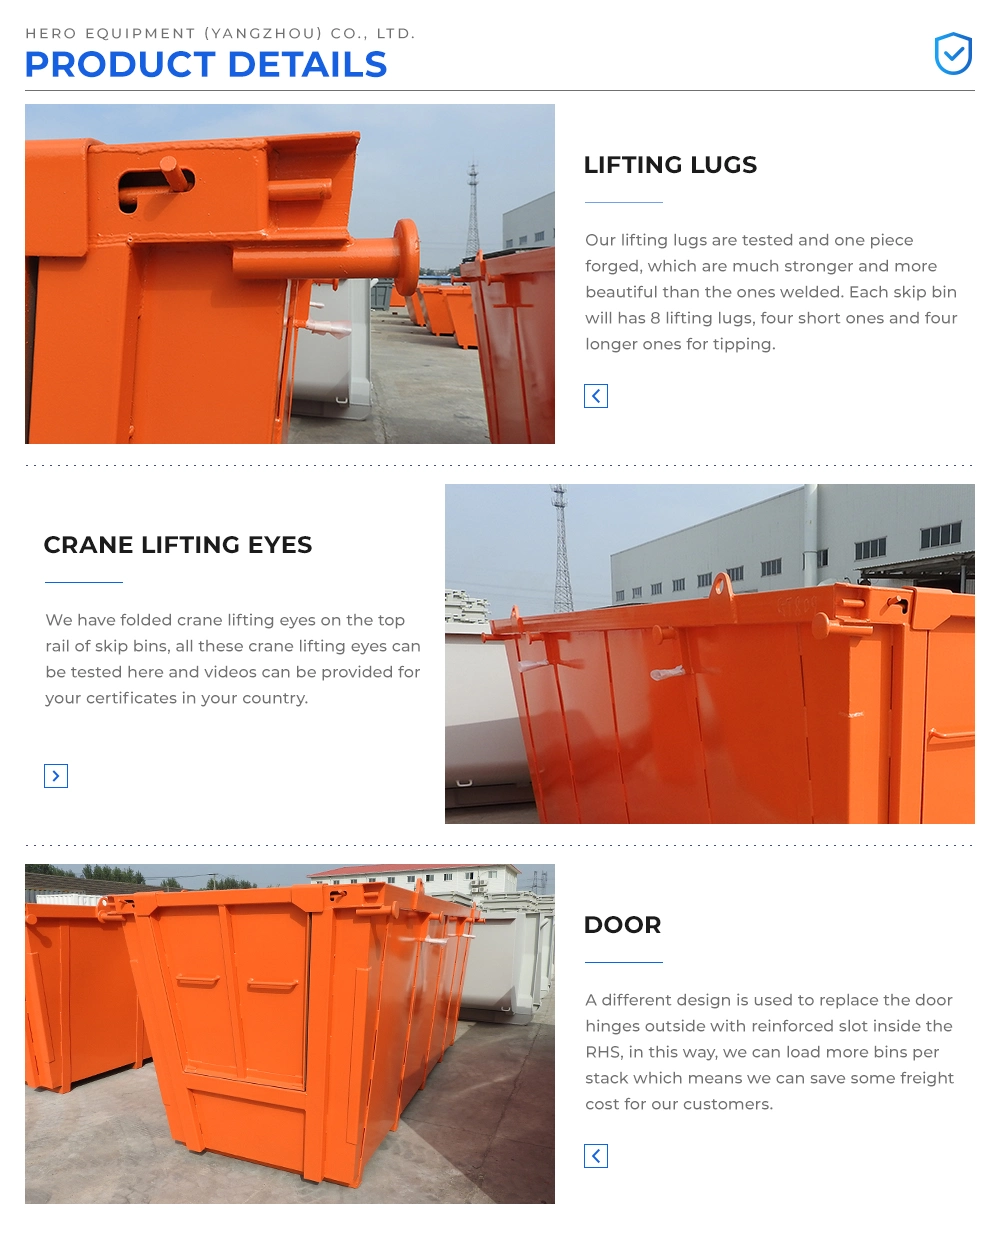 8 Cubic Meters Garbage Bins Recycling Bins Skip Containers Skip Bins